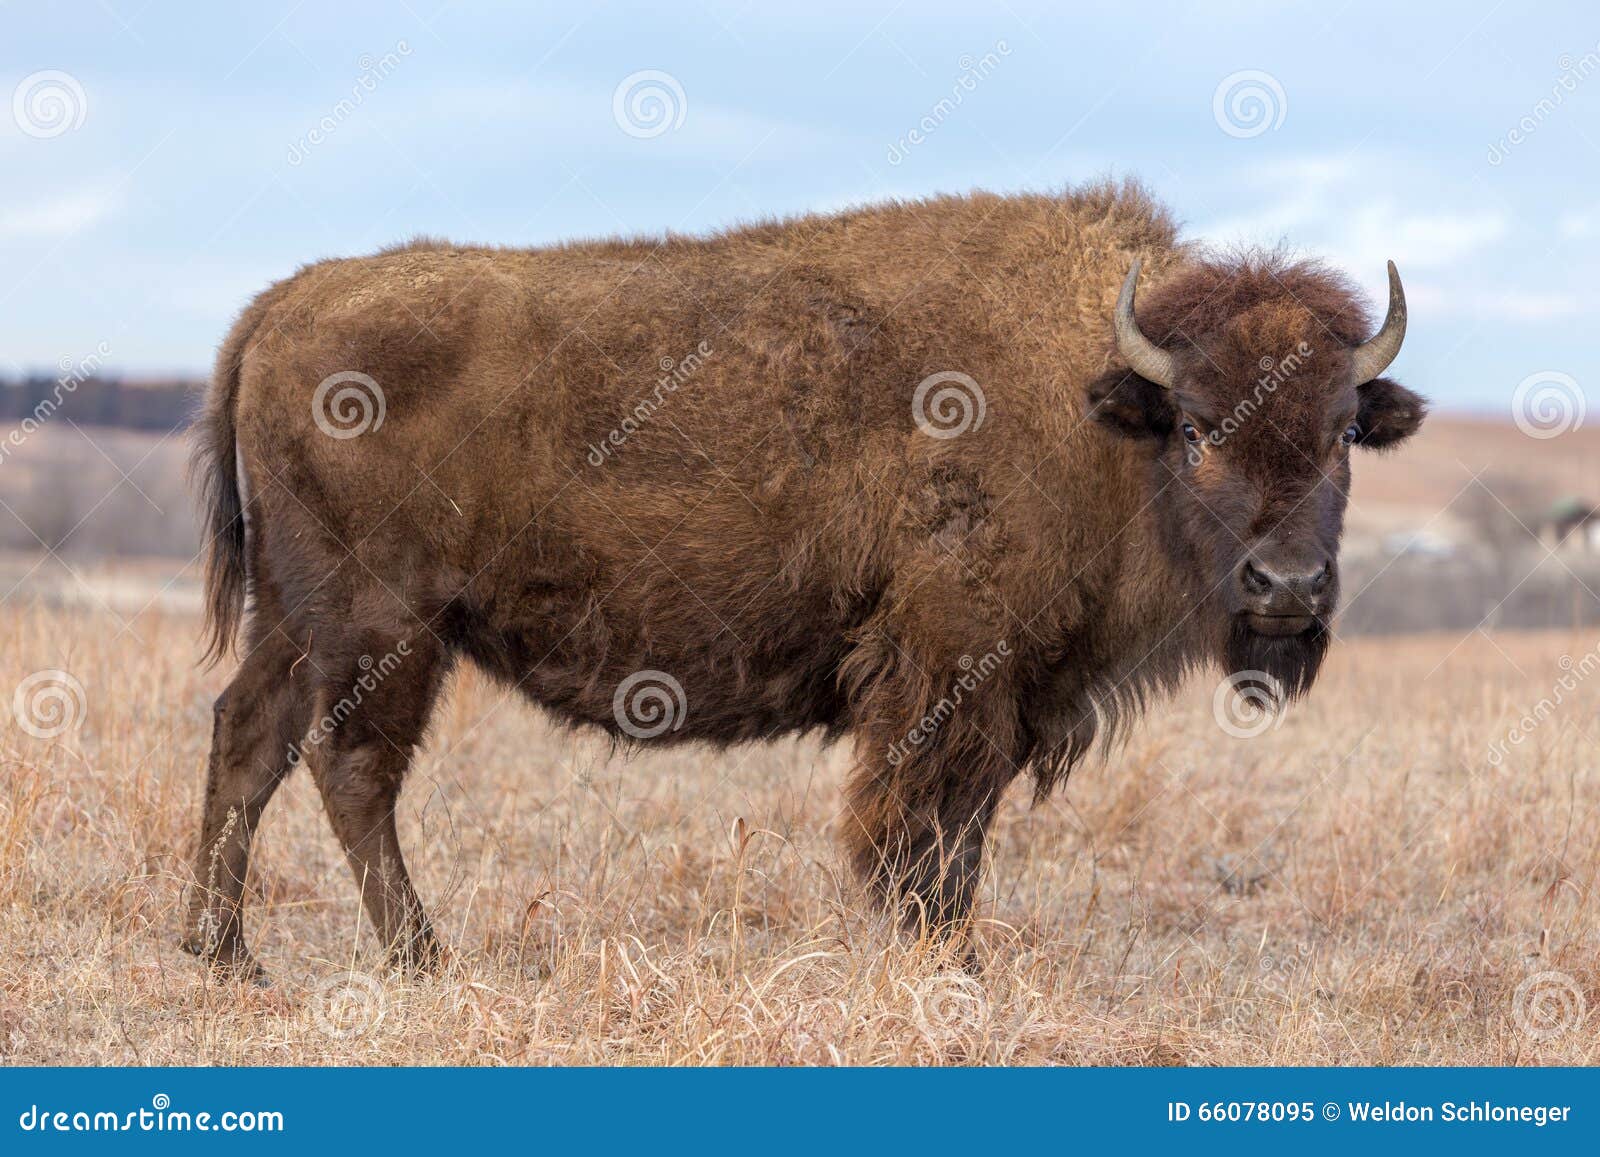 standing brown bison, kansas